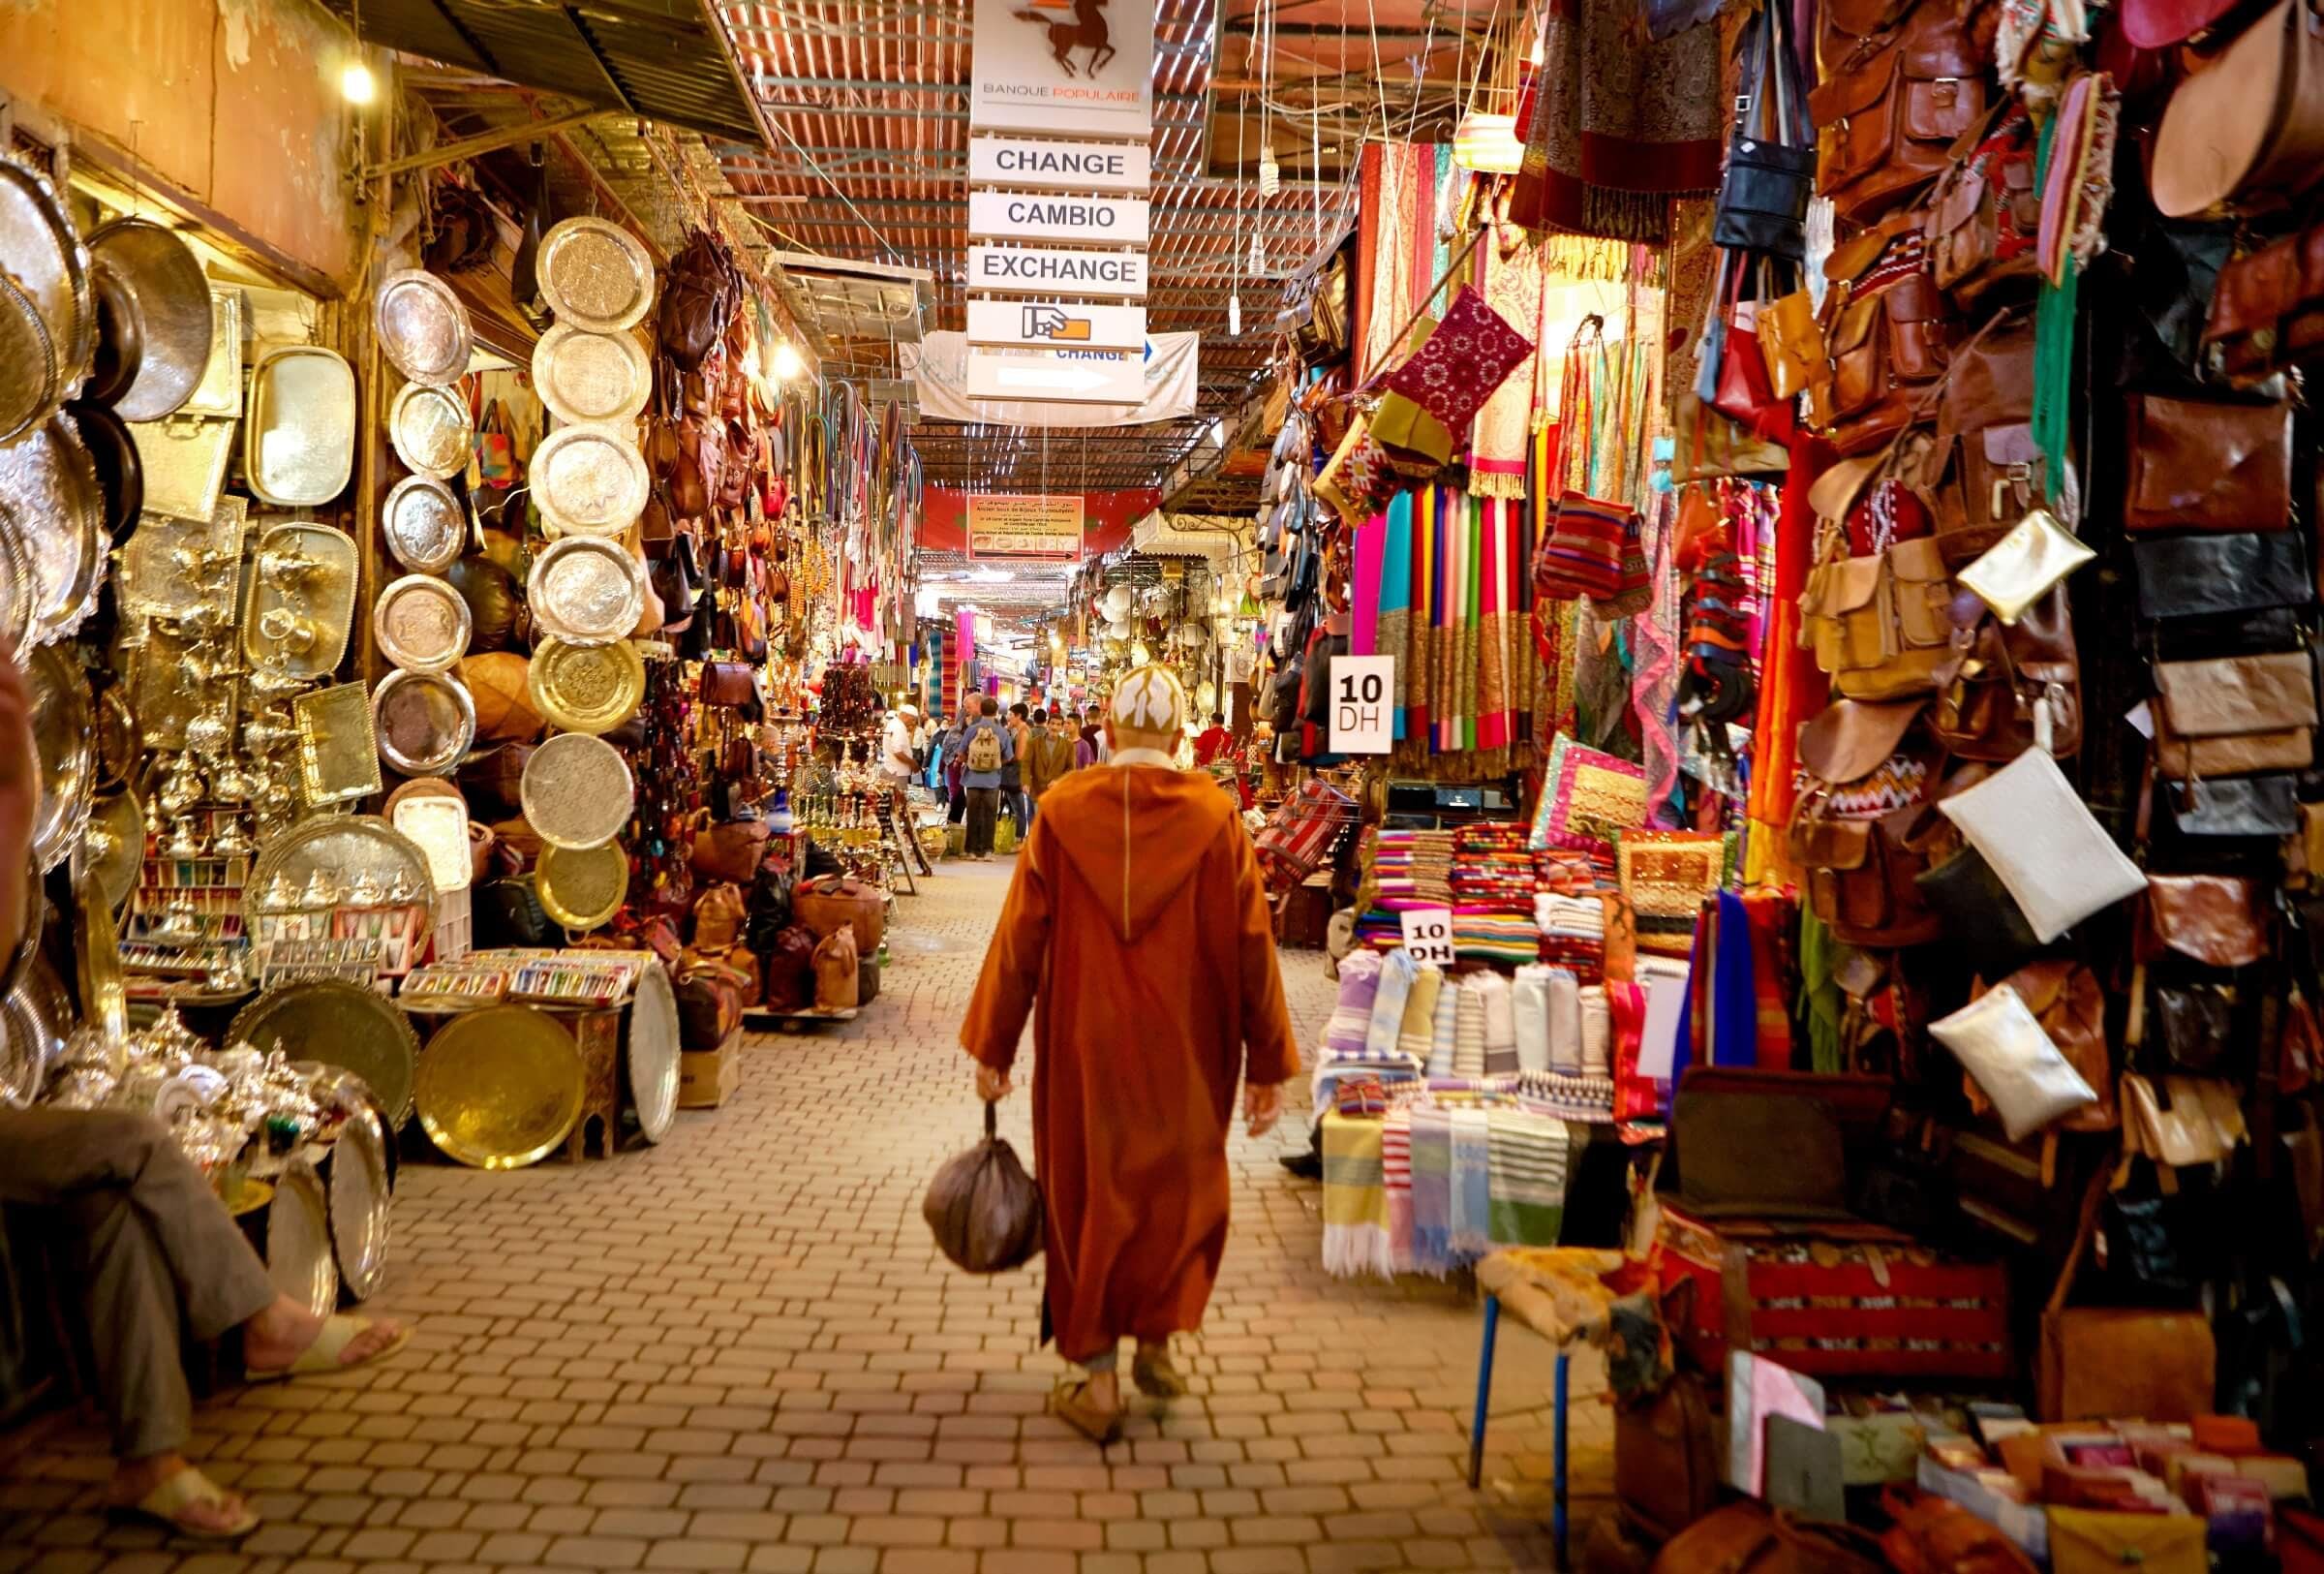 Una guida alla contrattazione a Marrakech 